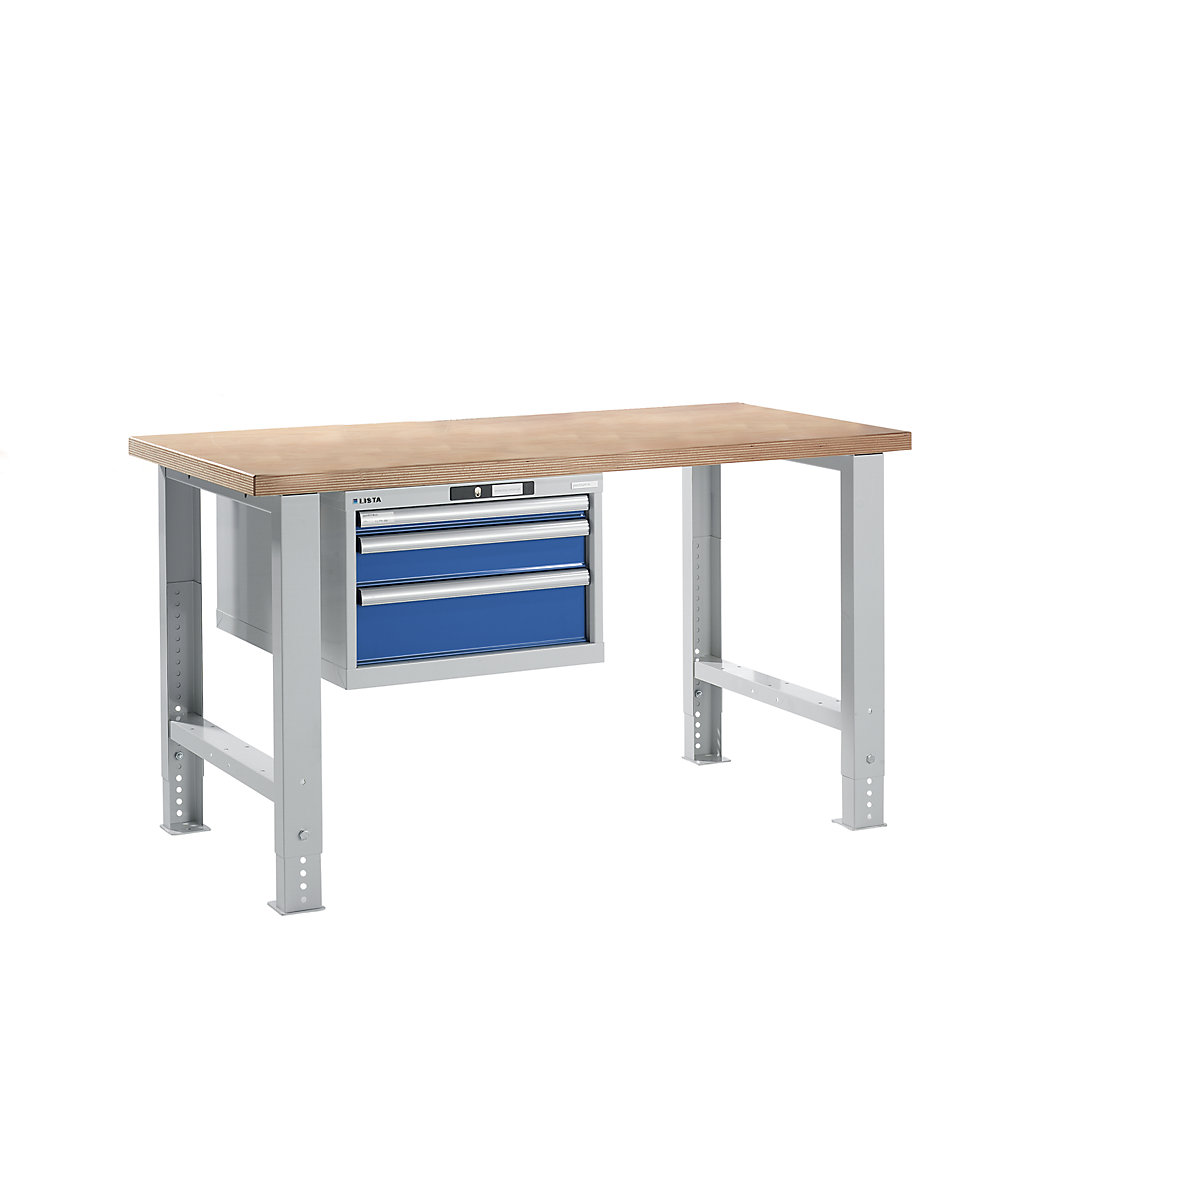 Stół warsztatowy w systemie modułowym – LISTA, wys. 740 – 1090 mm, szafka wisząca, 3 szuflady, niebieski gencjanowy, szer. stołu 1500 mm-17